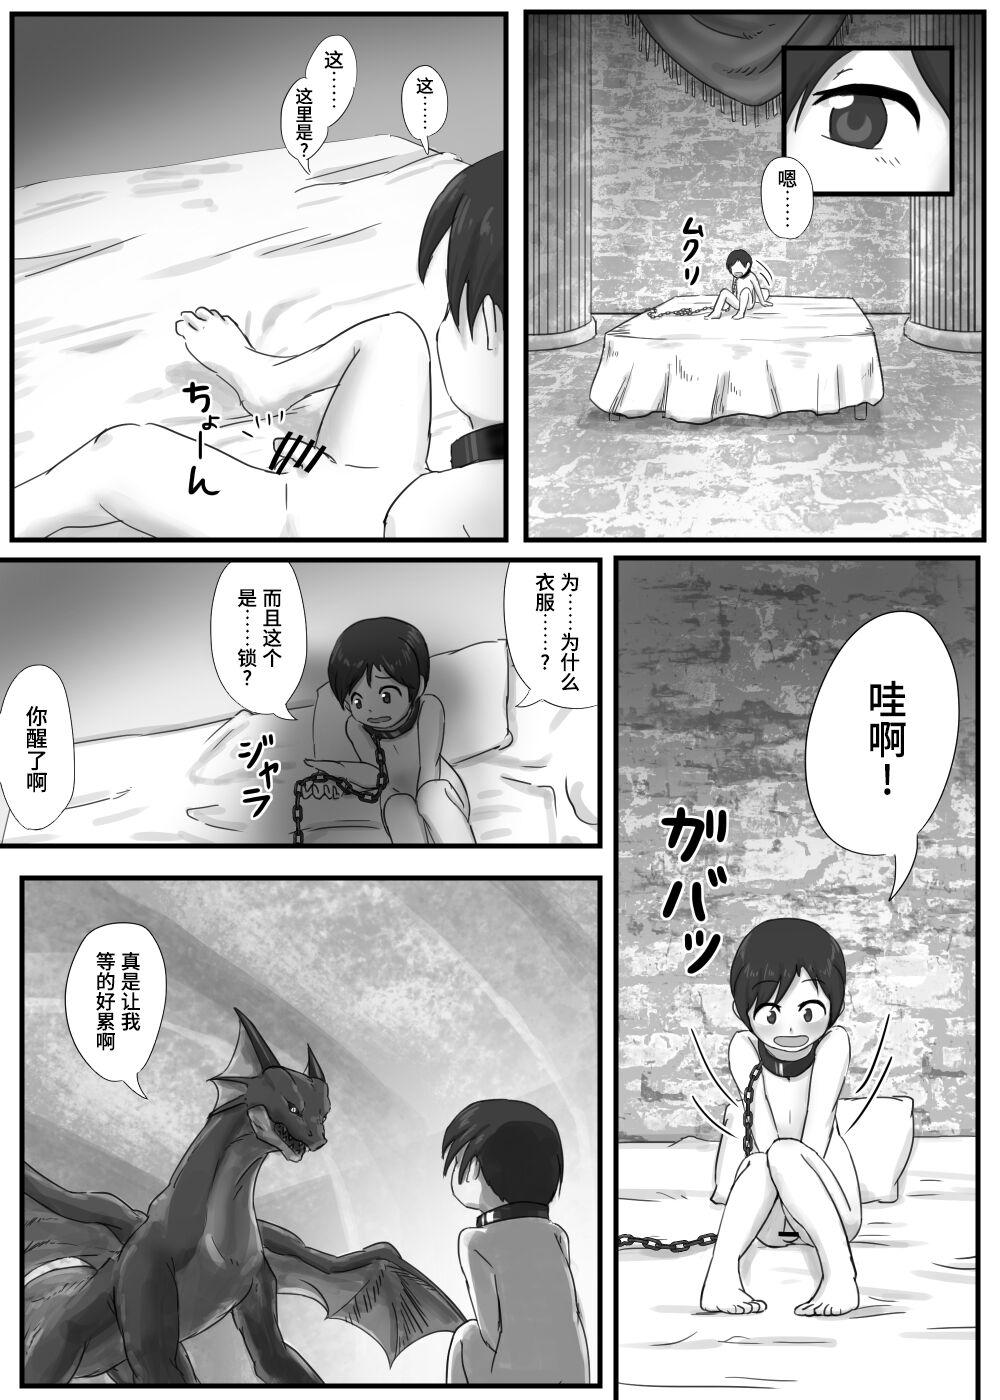 Gaping Dragon no Shita no Kuchi - Original Little - Page 4